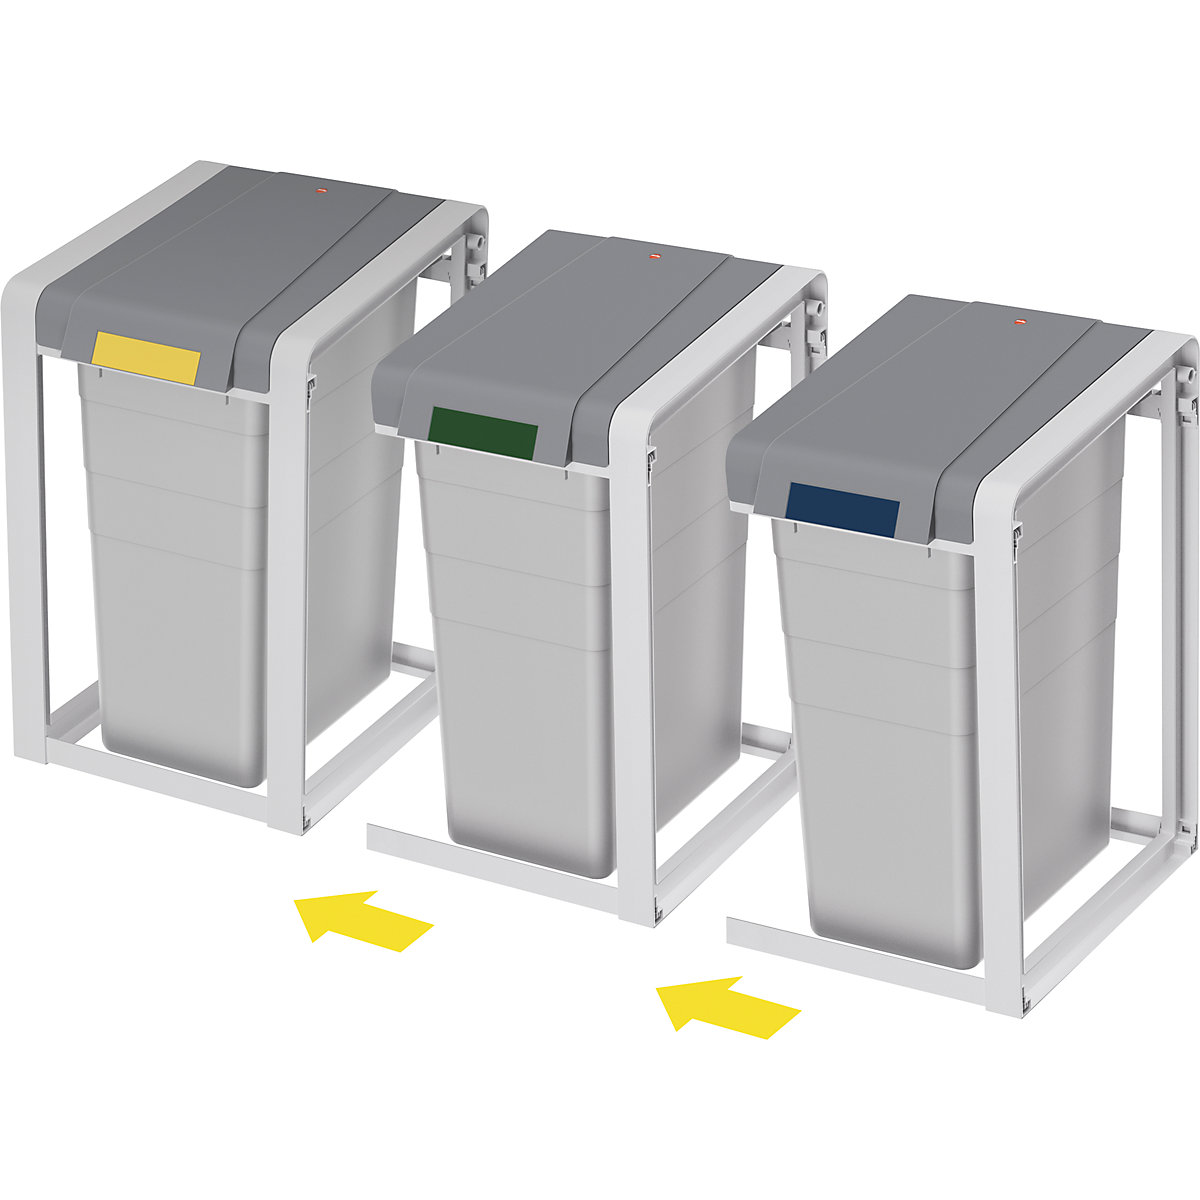 Sistema modular de recipientes para separar materiales ProfiLine, ecológico y flexible – Hailo (Imagen del producto 4)-3